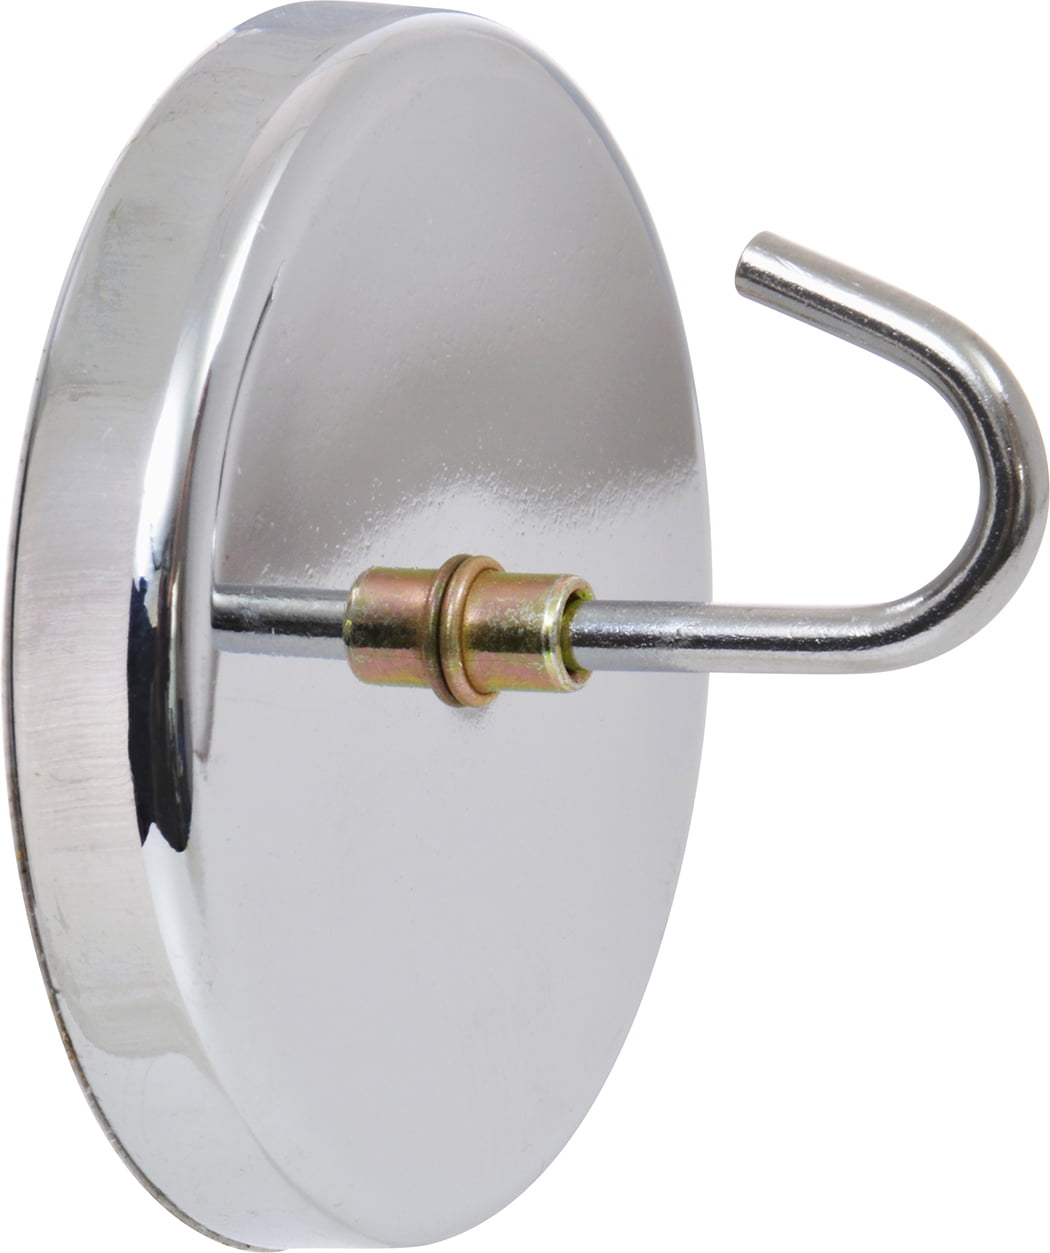 Hillman 536239 Magnetic Hook, Silver, Zinc Plated, 1 (9lb) Walmart.com